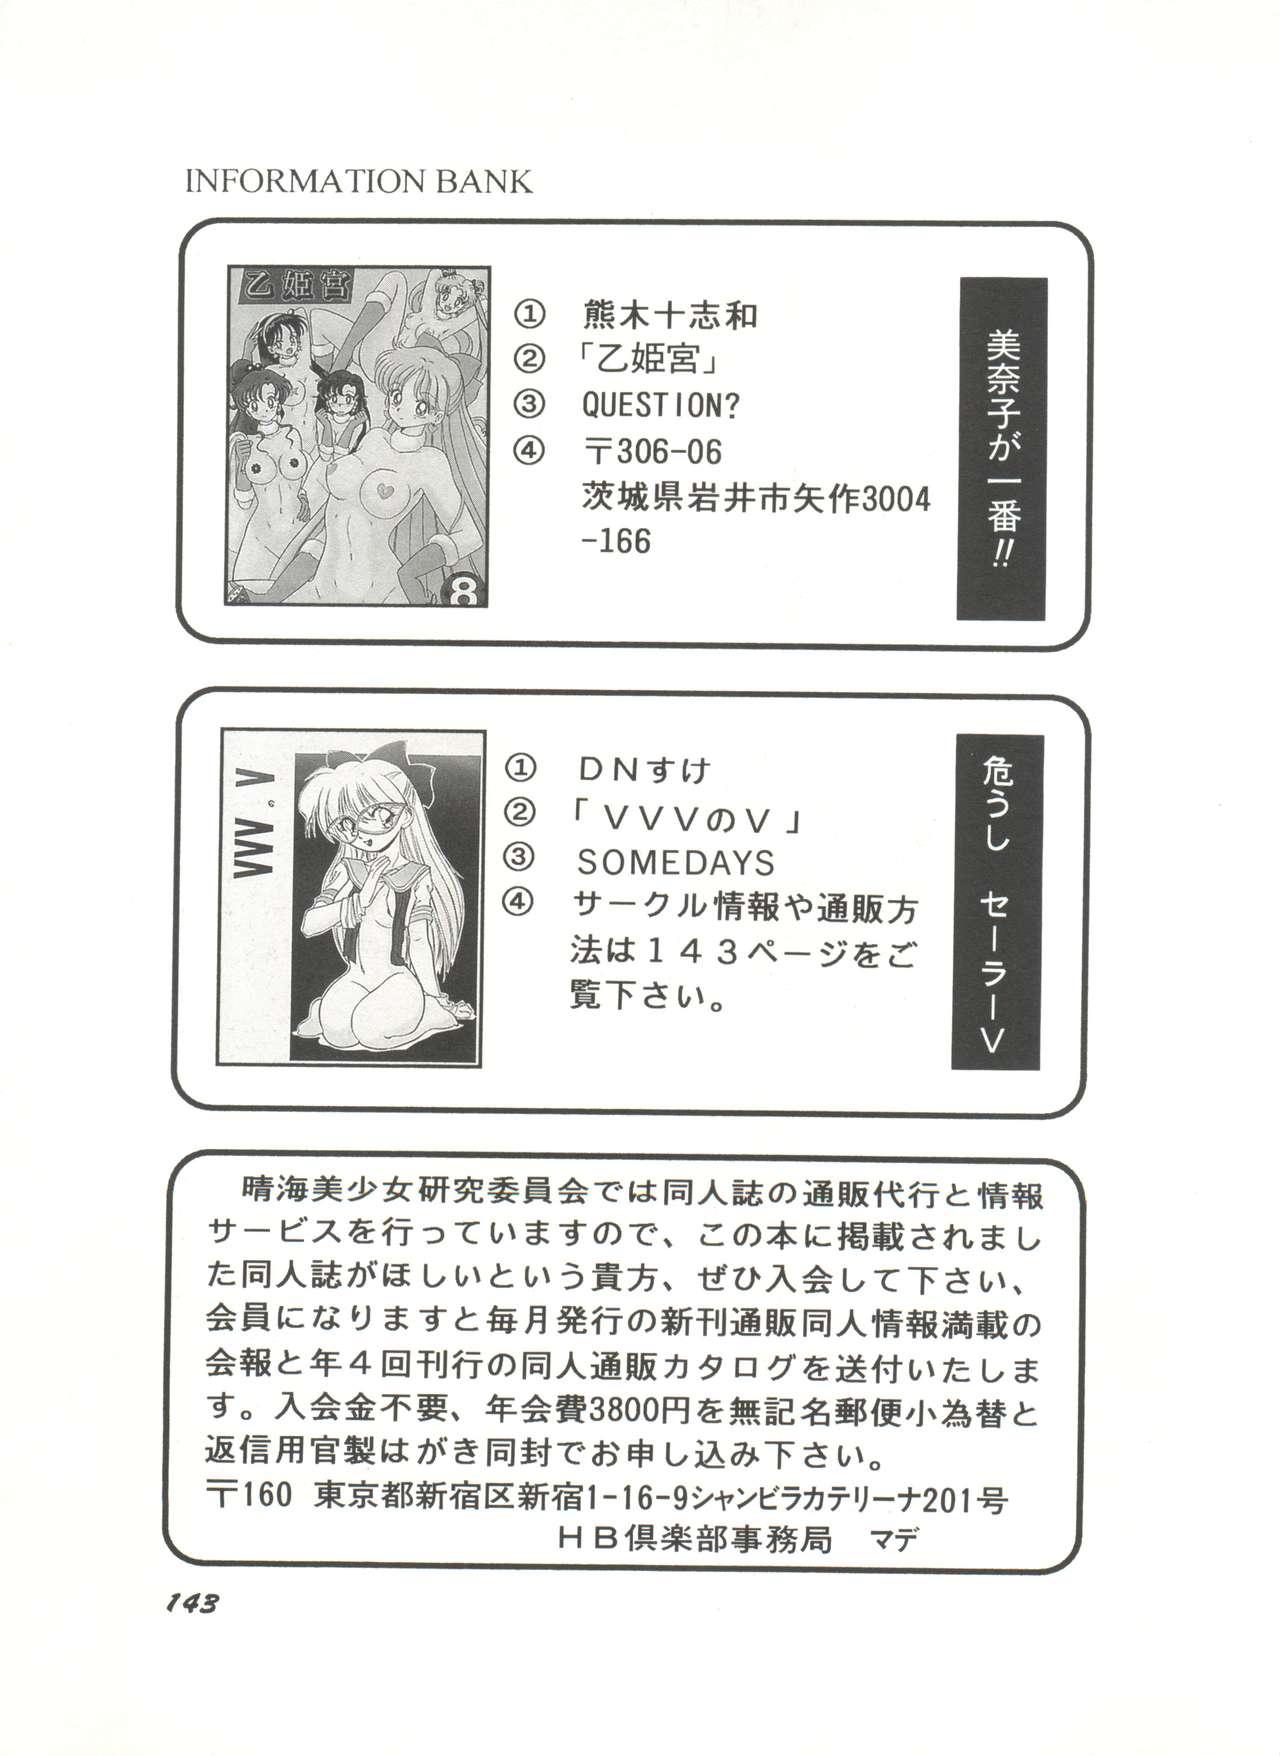 Bishoujo Doujinshi Anthology 3 - Moon Paradise 2 Tsuki no Rakuen 147